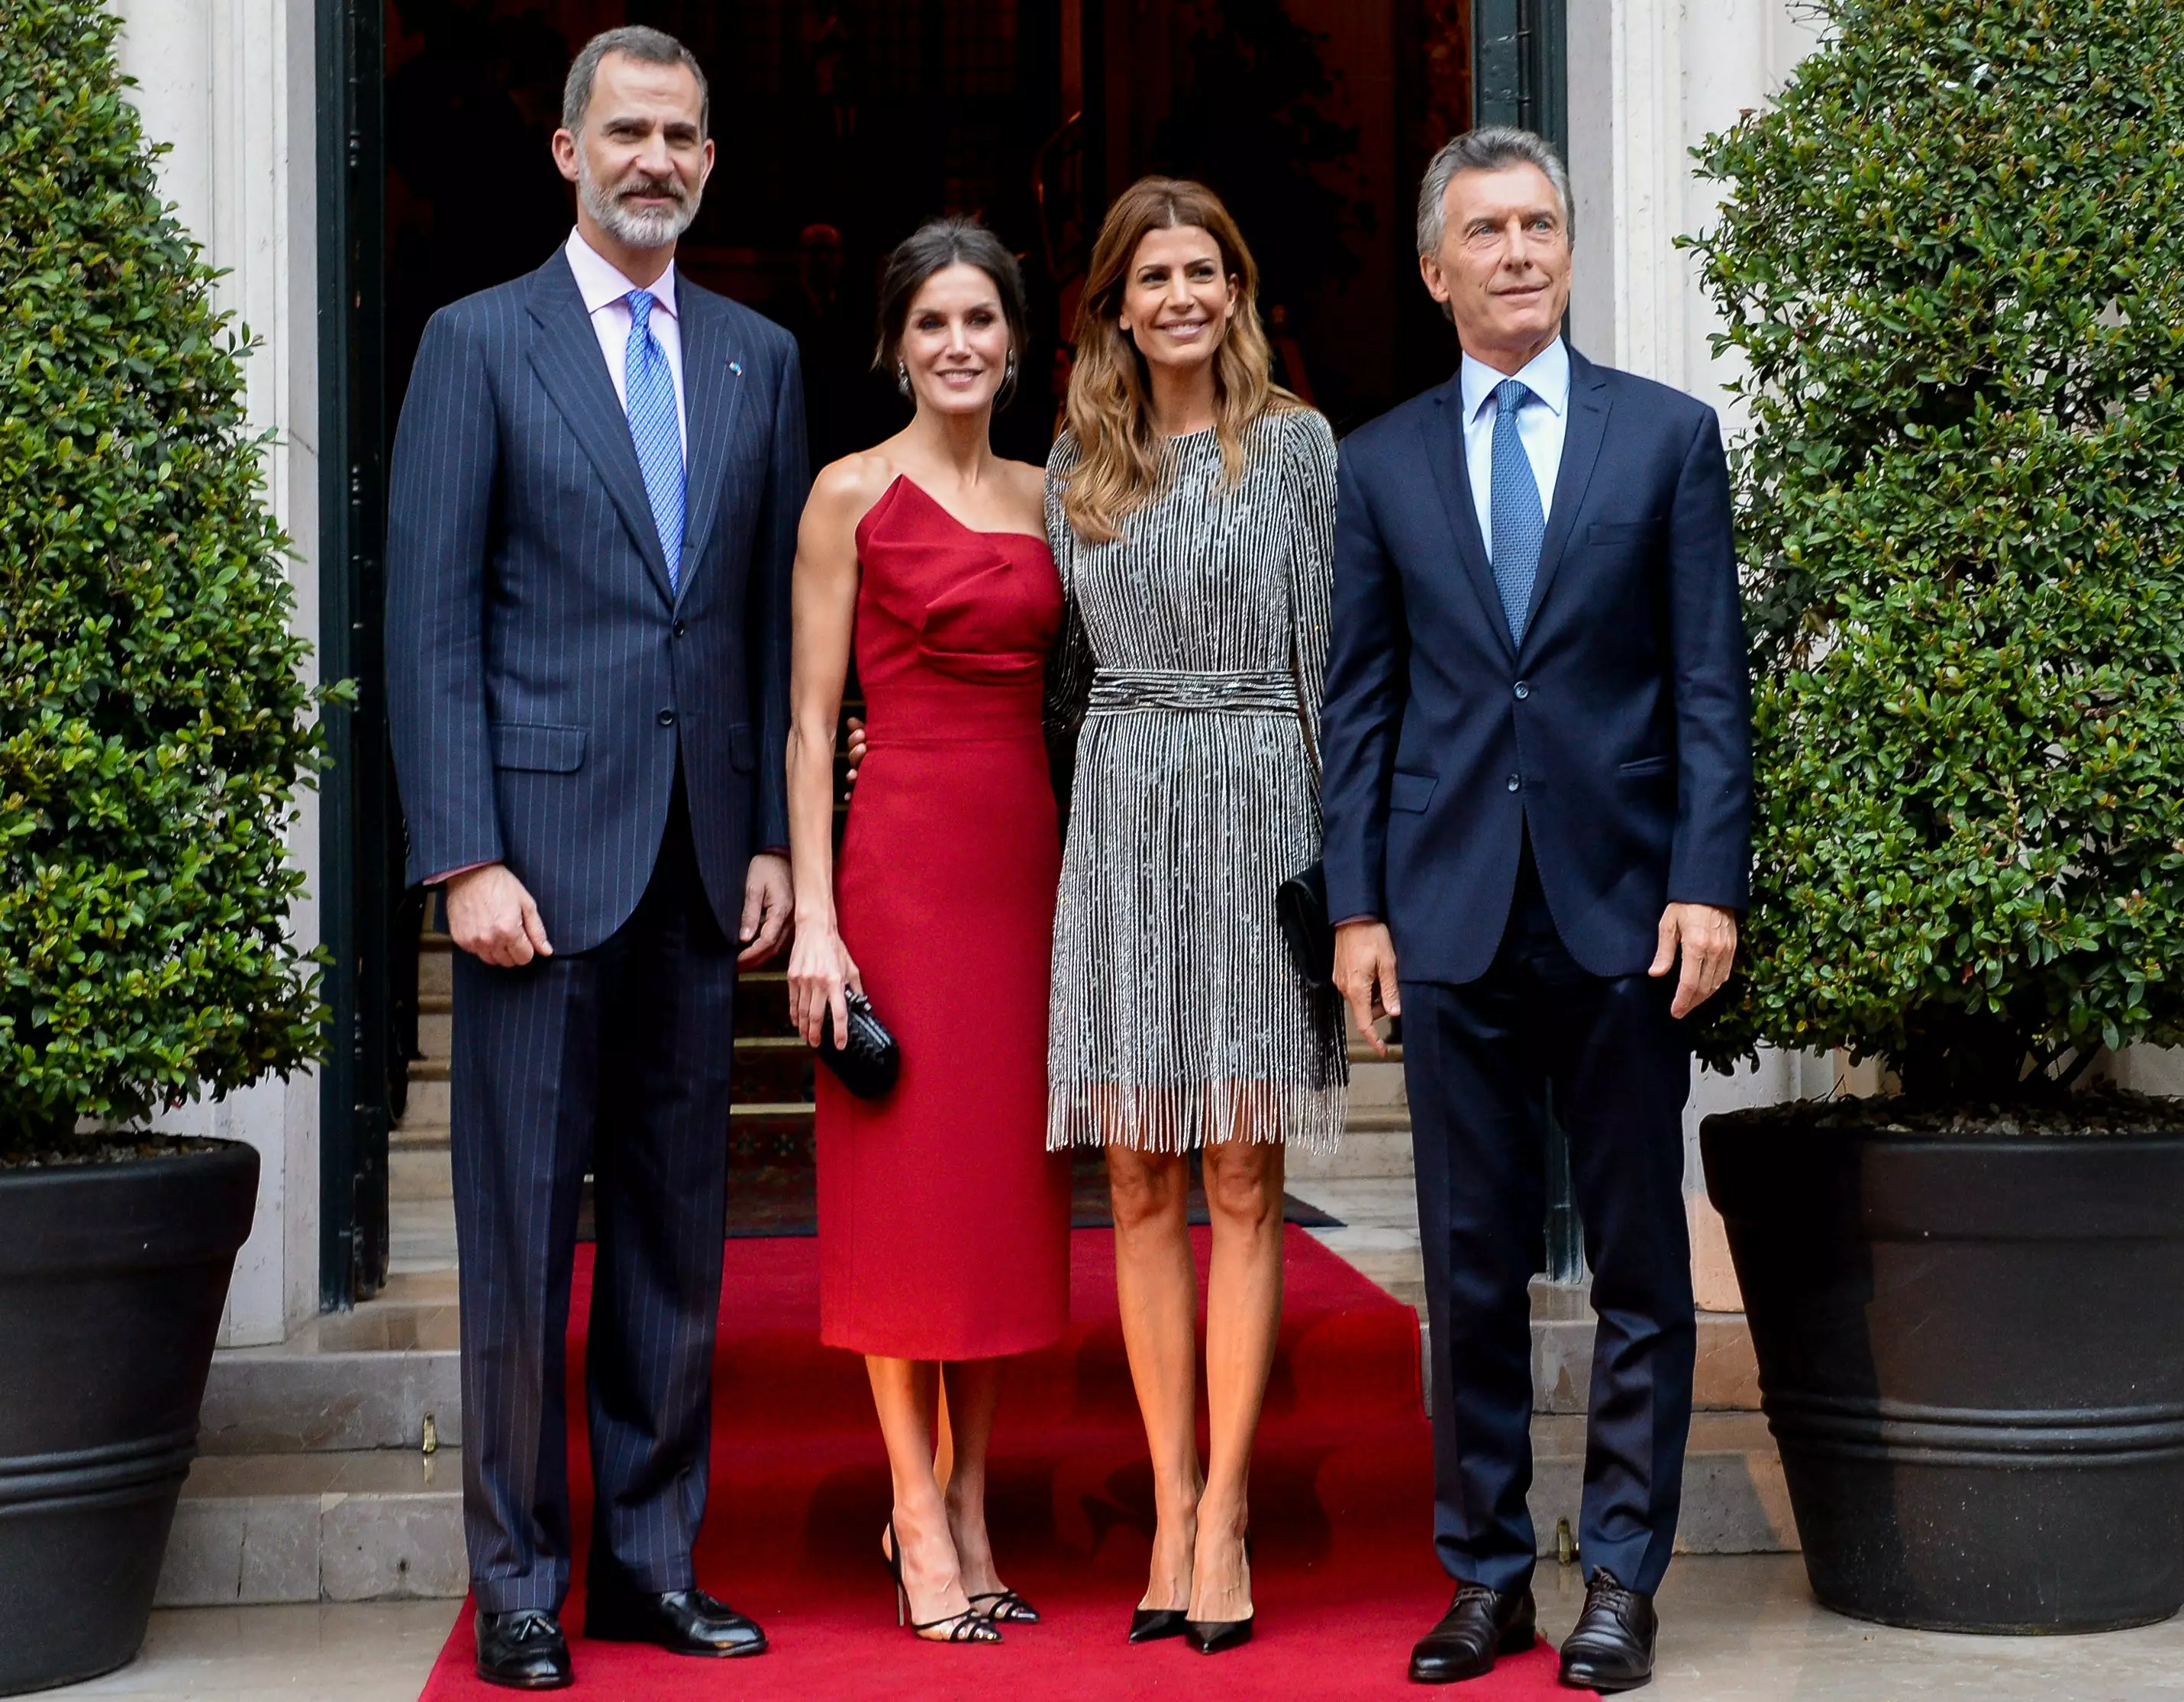 Іспанська королева Летиція у вечірній сукні вишневого кольору і з оголеними плечима